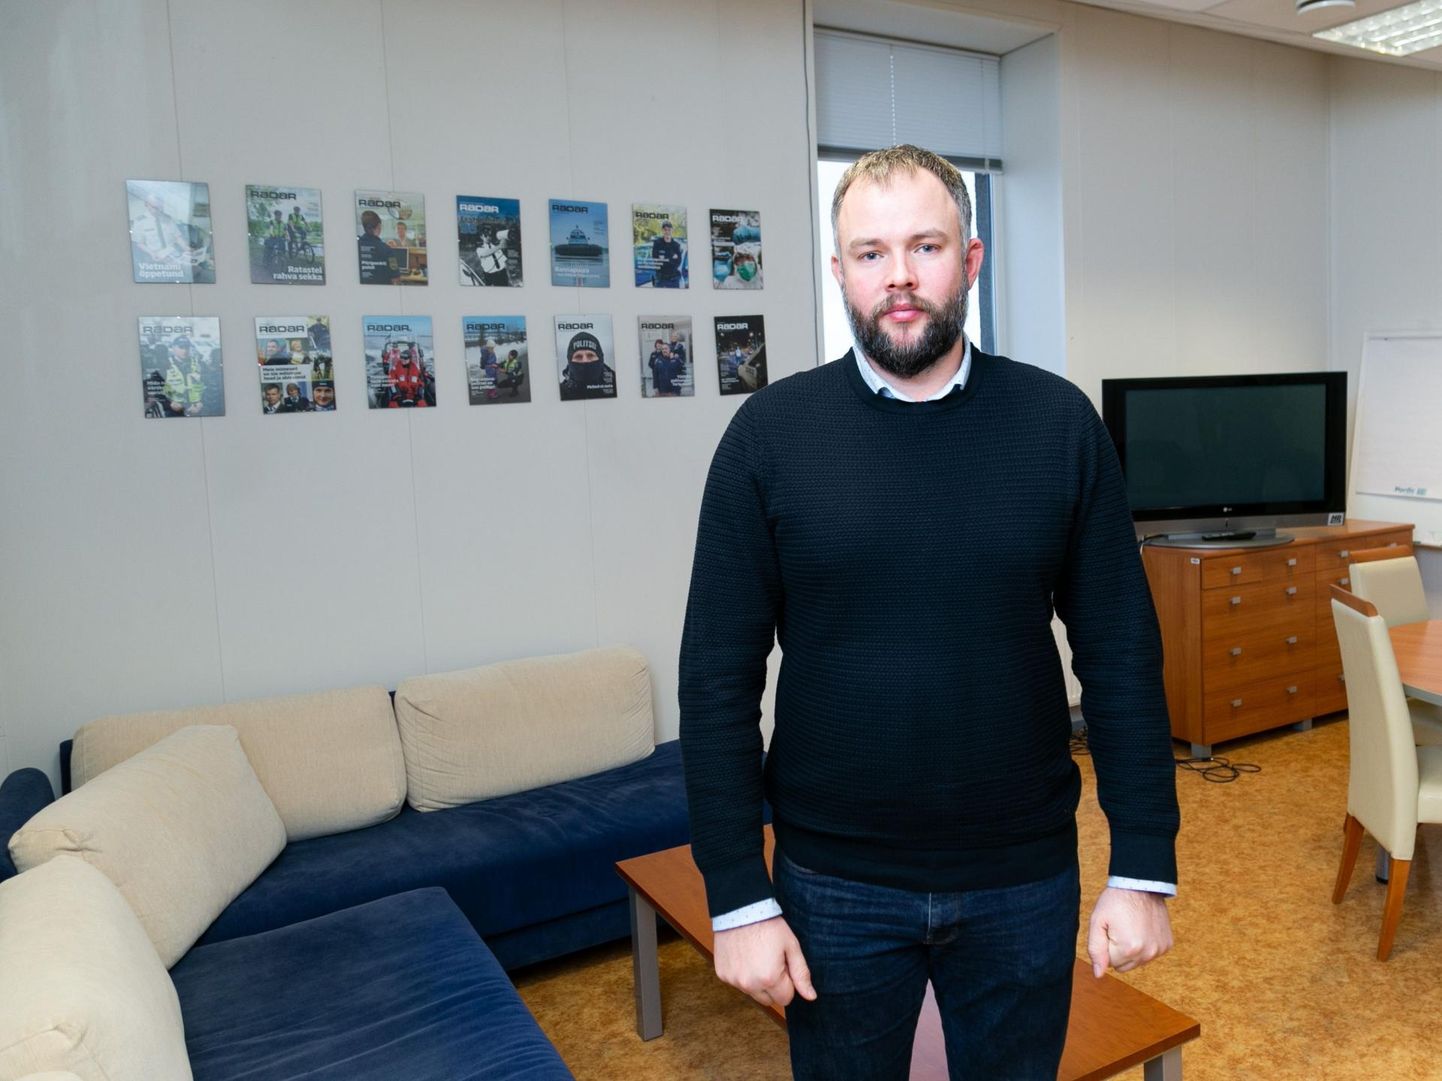 Põhja prefektuuri kriminaalbüroo talituse juhi Hannes Keldi sõnul töötavad praegu politseinikud üle Eesti, et tabada kuriteoga seotud saateautot.